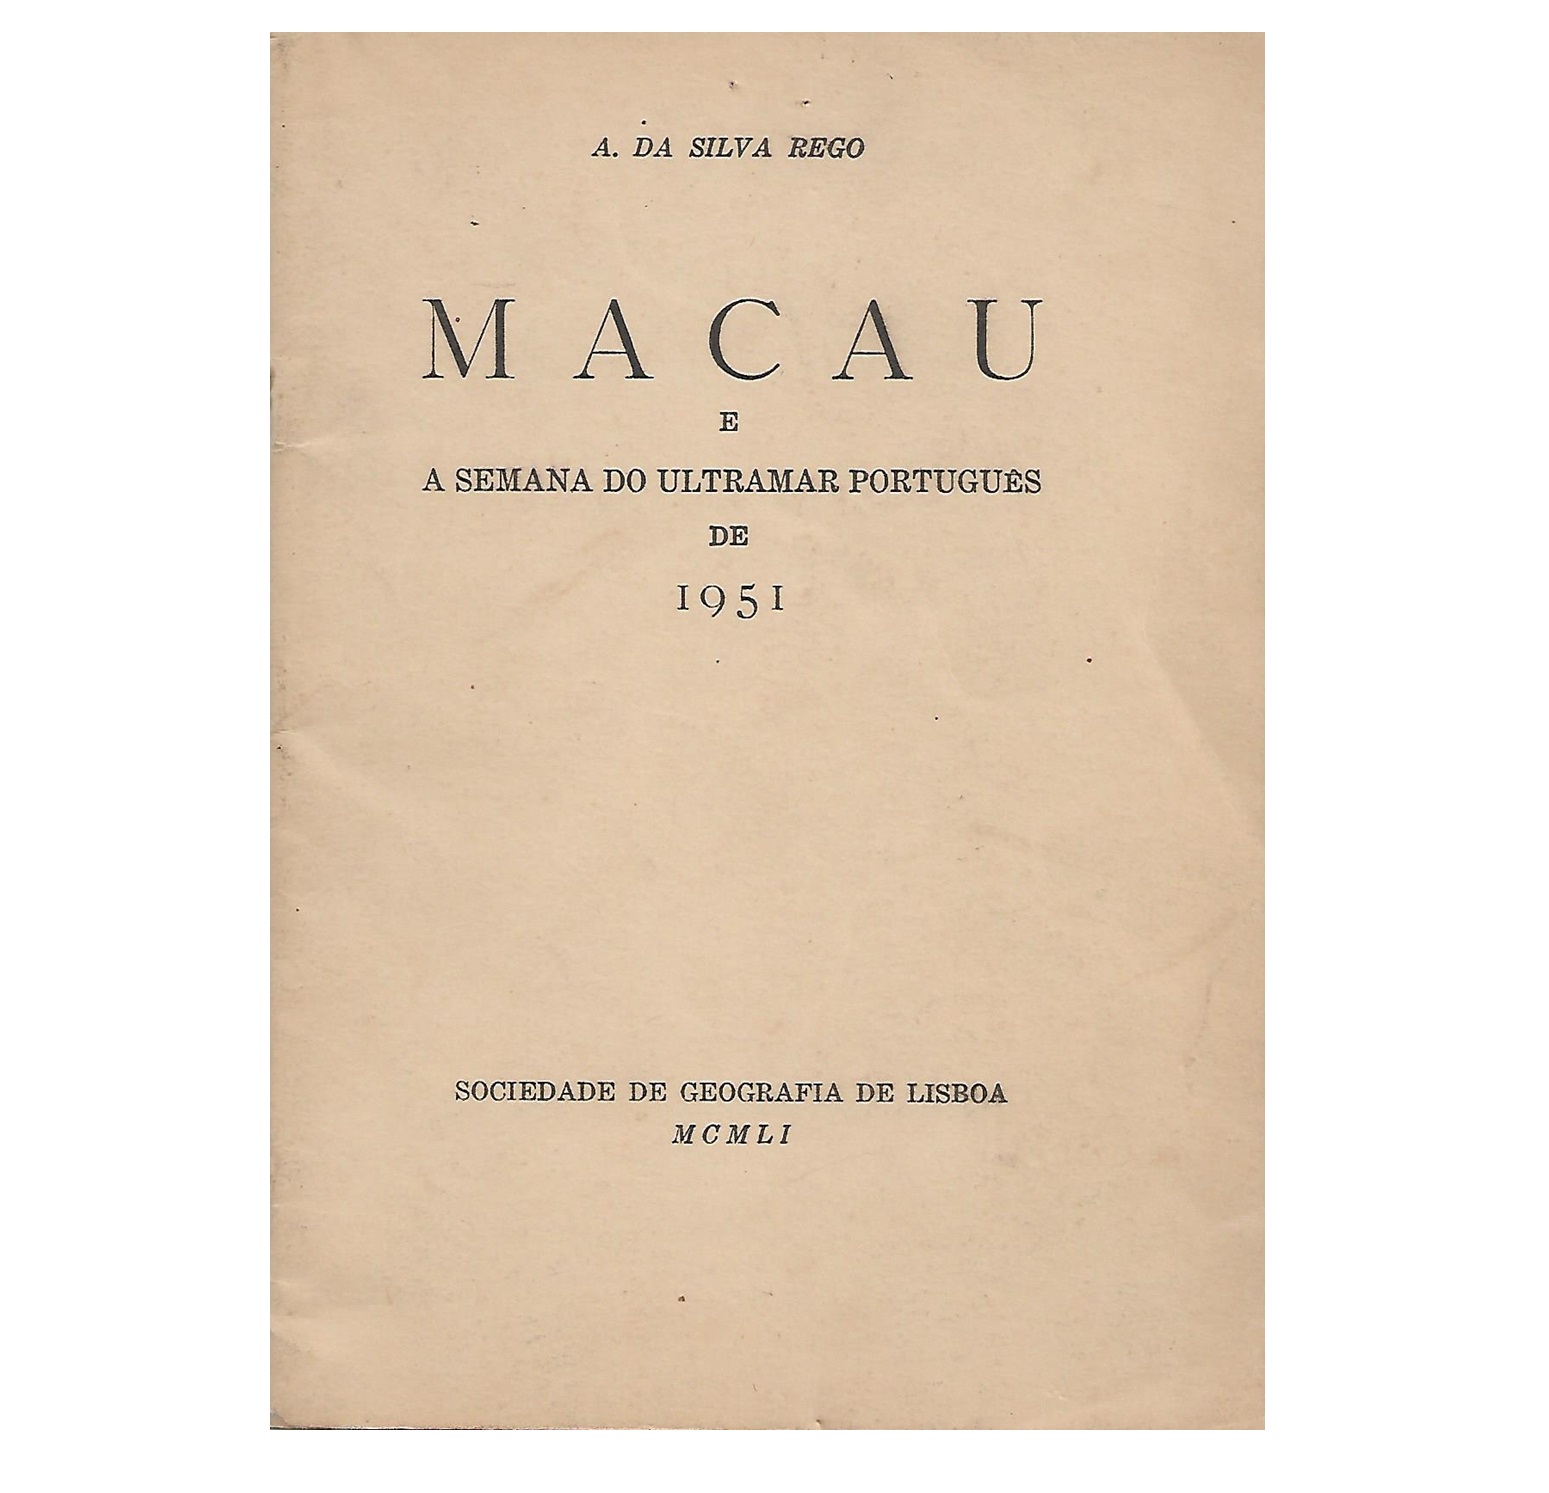 MACAU E A SEMANA DO ULTRAMAR PORTUGUÊS DE 1951